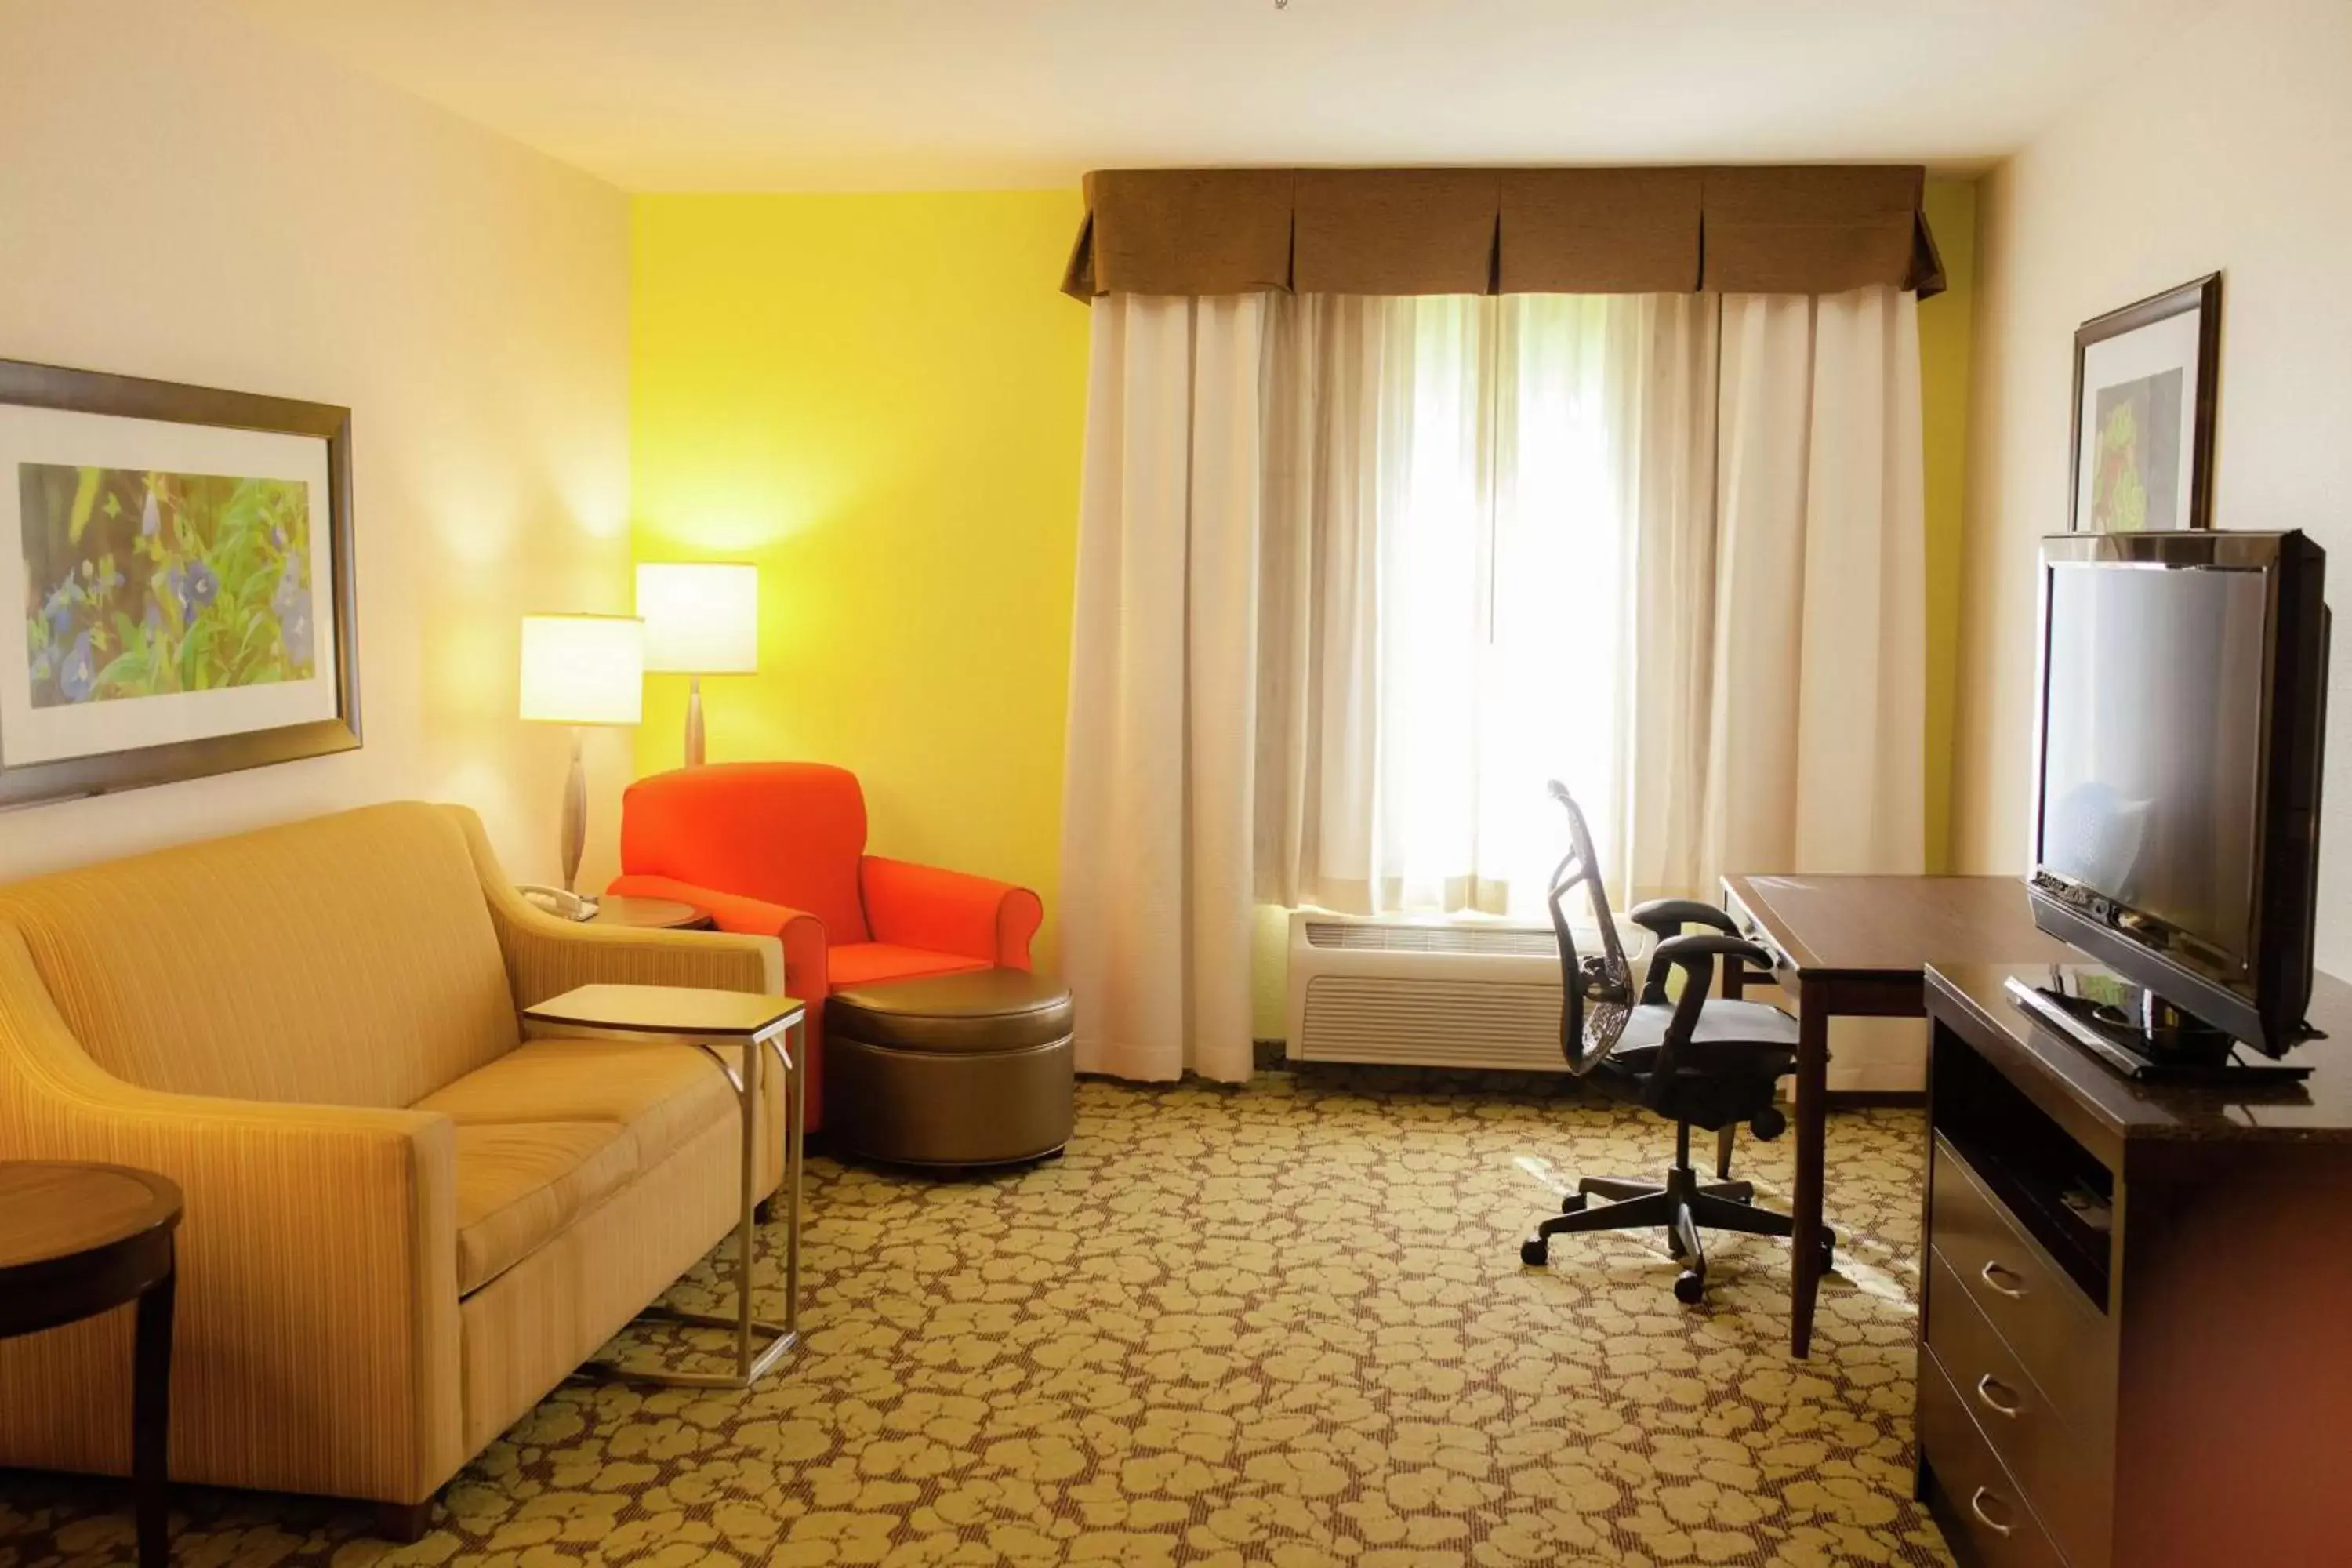 Bedroom, Seating Area in Hilton Garden Inn Redding